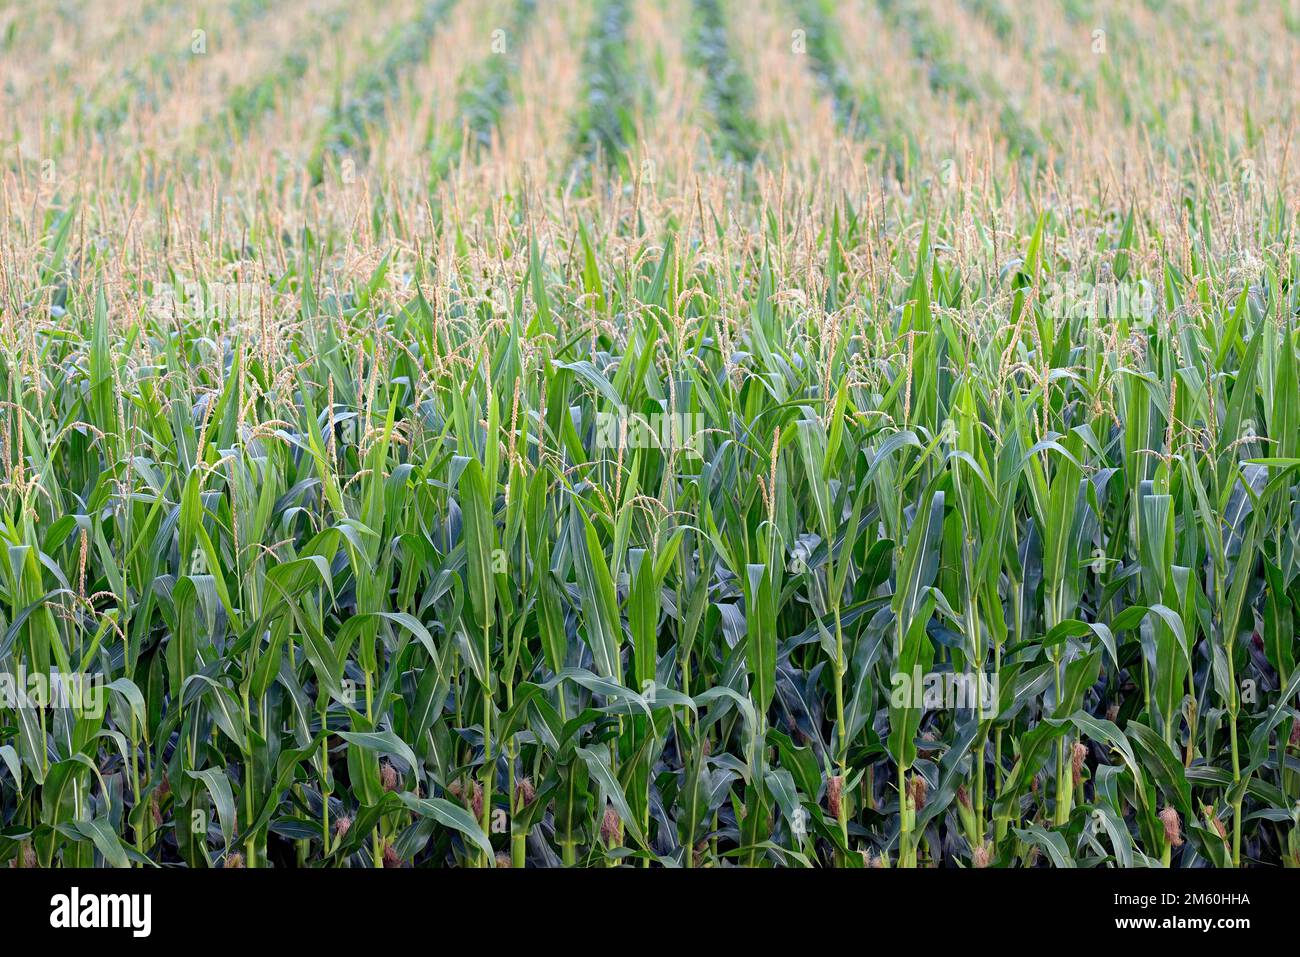 Maïs, champ de maïs (Zea mays), épis de maïs immatures avec soie de maïs (stigmate maydis), Rhénanie-du-Nord-Westphalie, Allemagne Banque D'Images